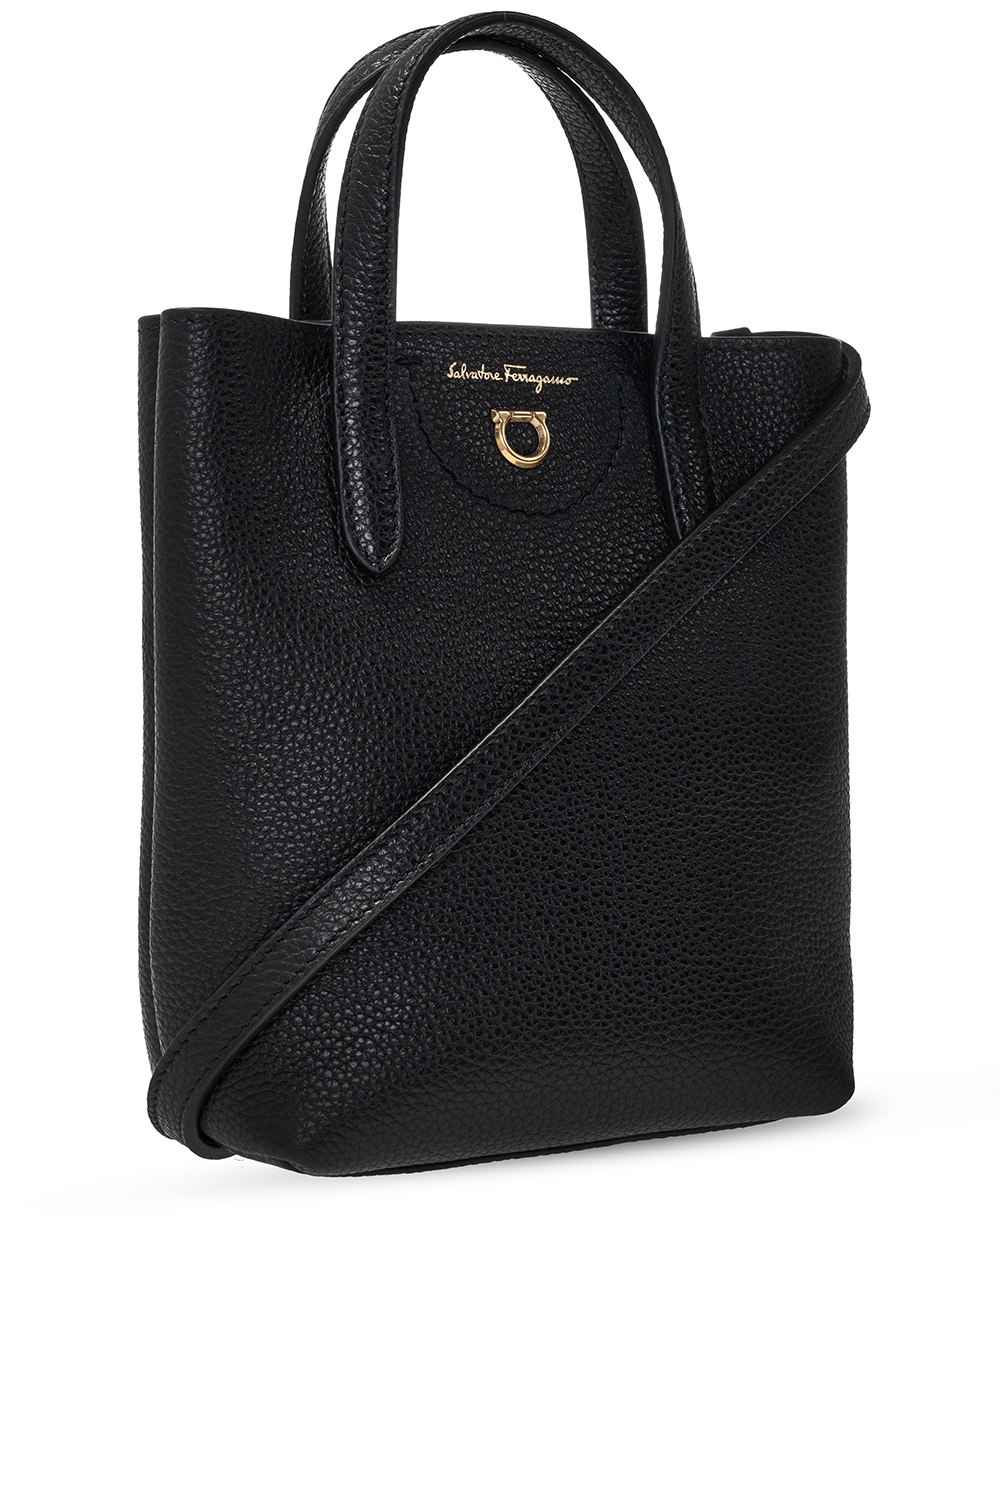 Salvatore Ferragamo Shoulder bag | Women's Bags | IetpShops